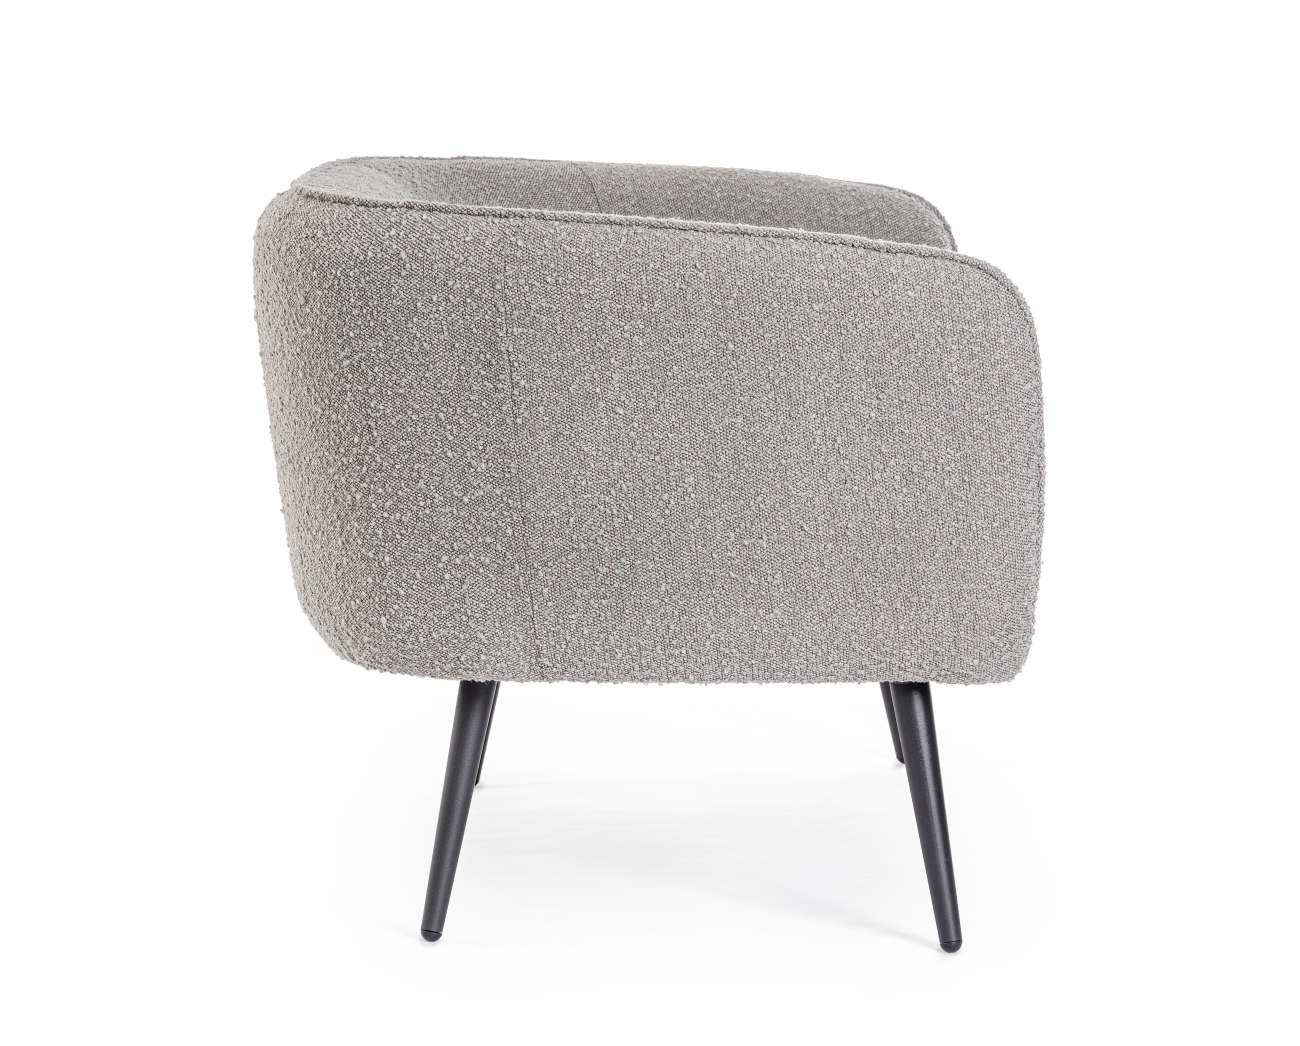 Das Sofa Avril überzeugt mit seinem modernen Stil. Gefertigt wurde es aus Bouclè-Stoff, welcher einen grauen Farbton besitzt. Das Gestell ist aus Metall und hat eine schwarze Farbe. Das Sofa ist in der Ausführung 2-Sitzer.